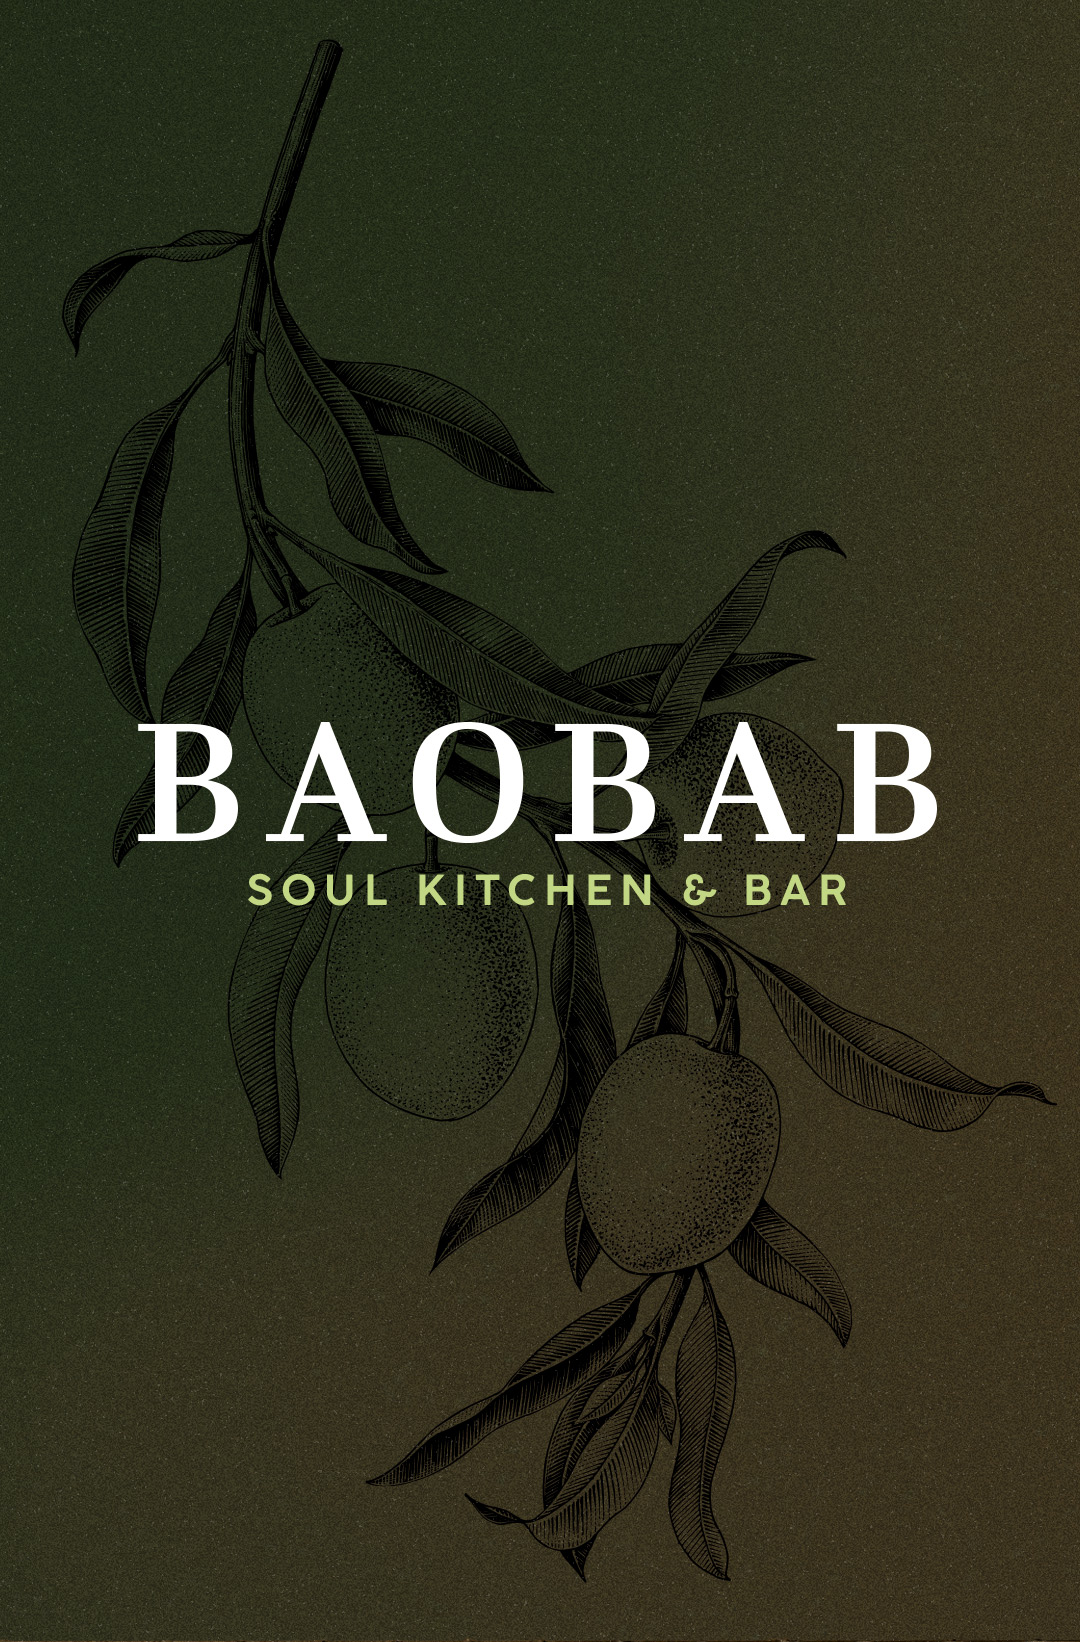 BAOBAB, Soul Kitchen & Bar